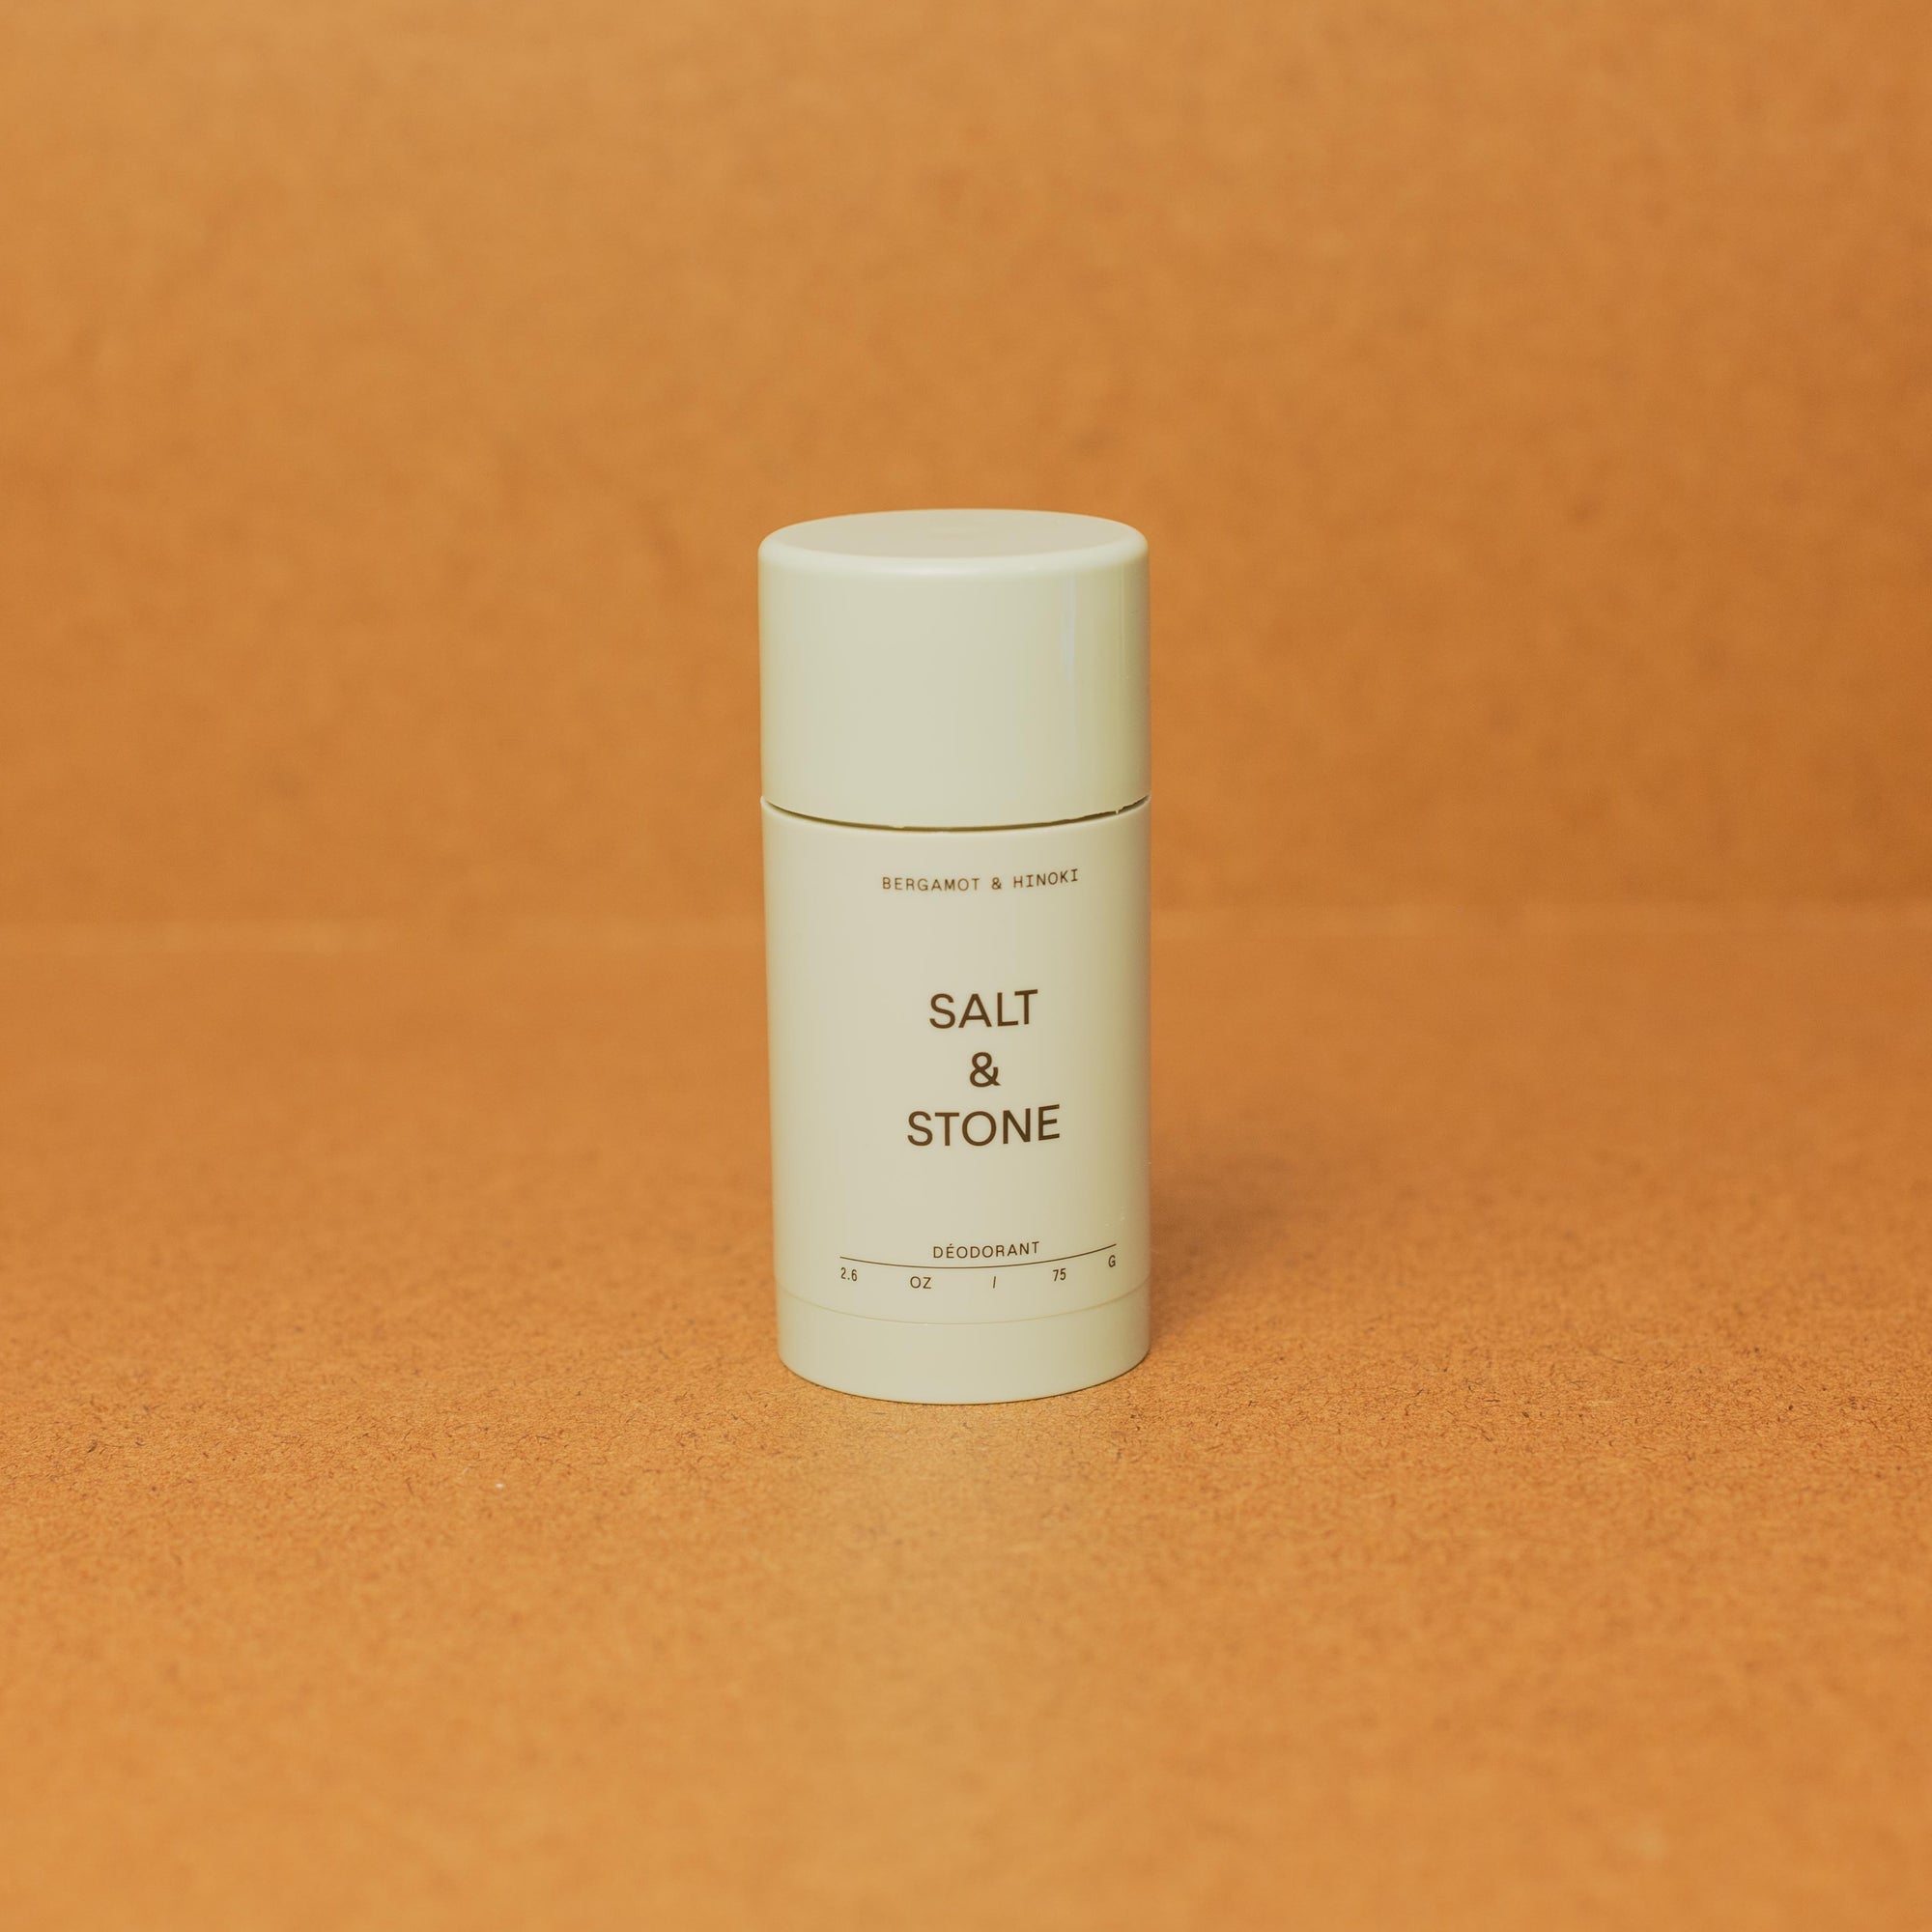 Salt and Stone Deodorant - Bergamont &amp; Hinoki brown background